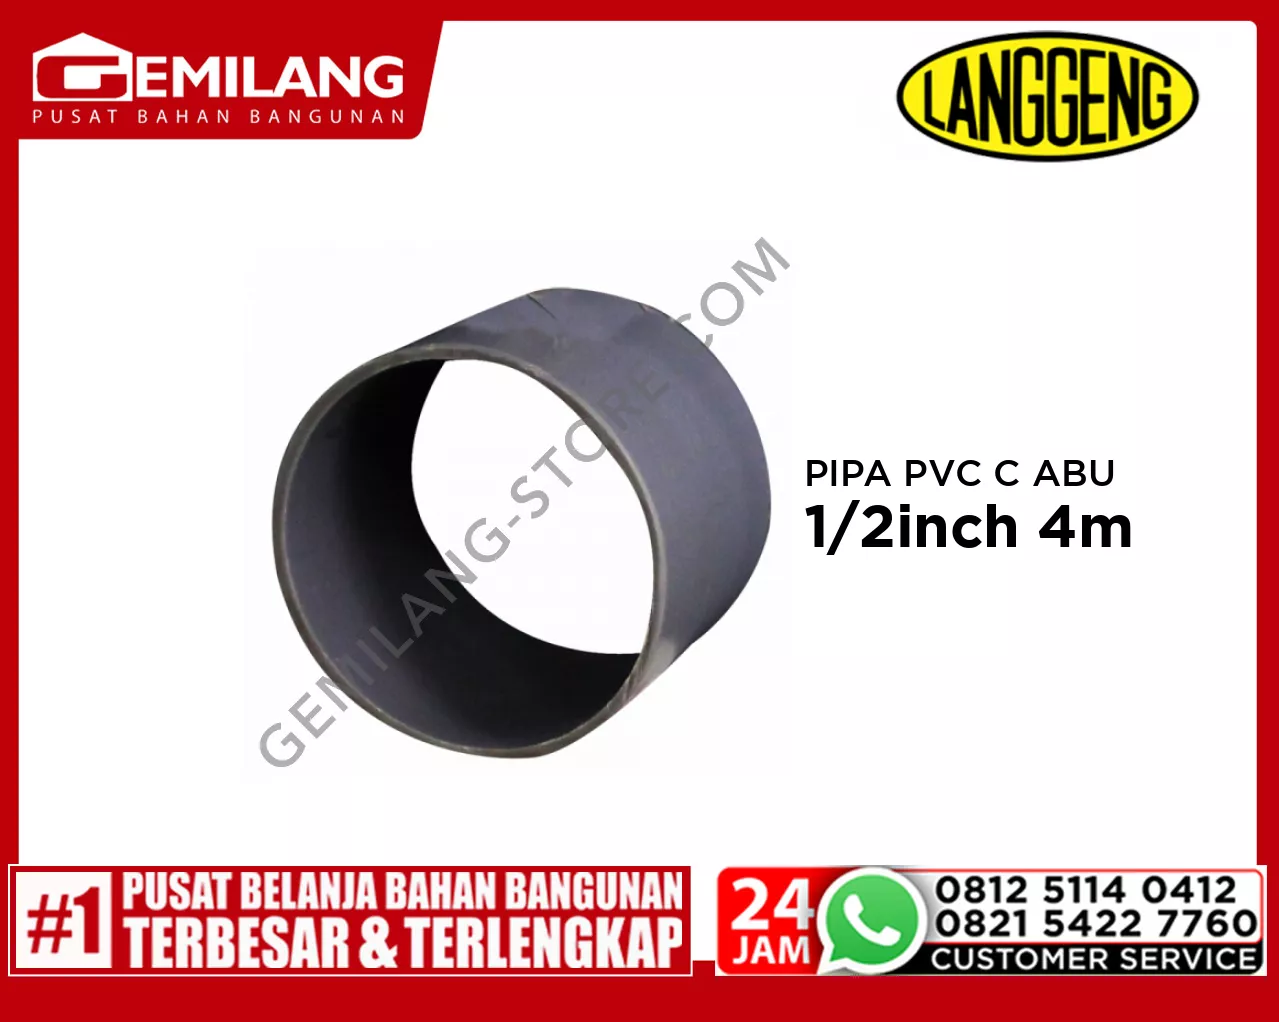 LANGGENG PIPA PVC C ABU-ABU 2 1/2inch 4m